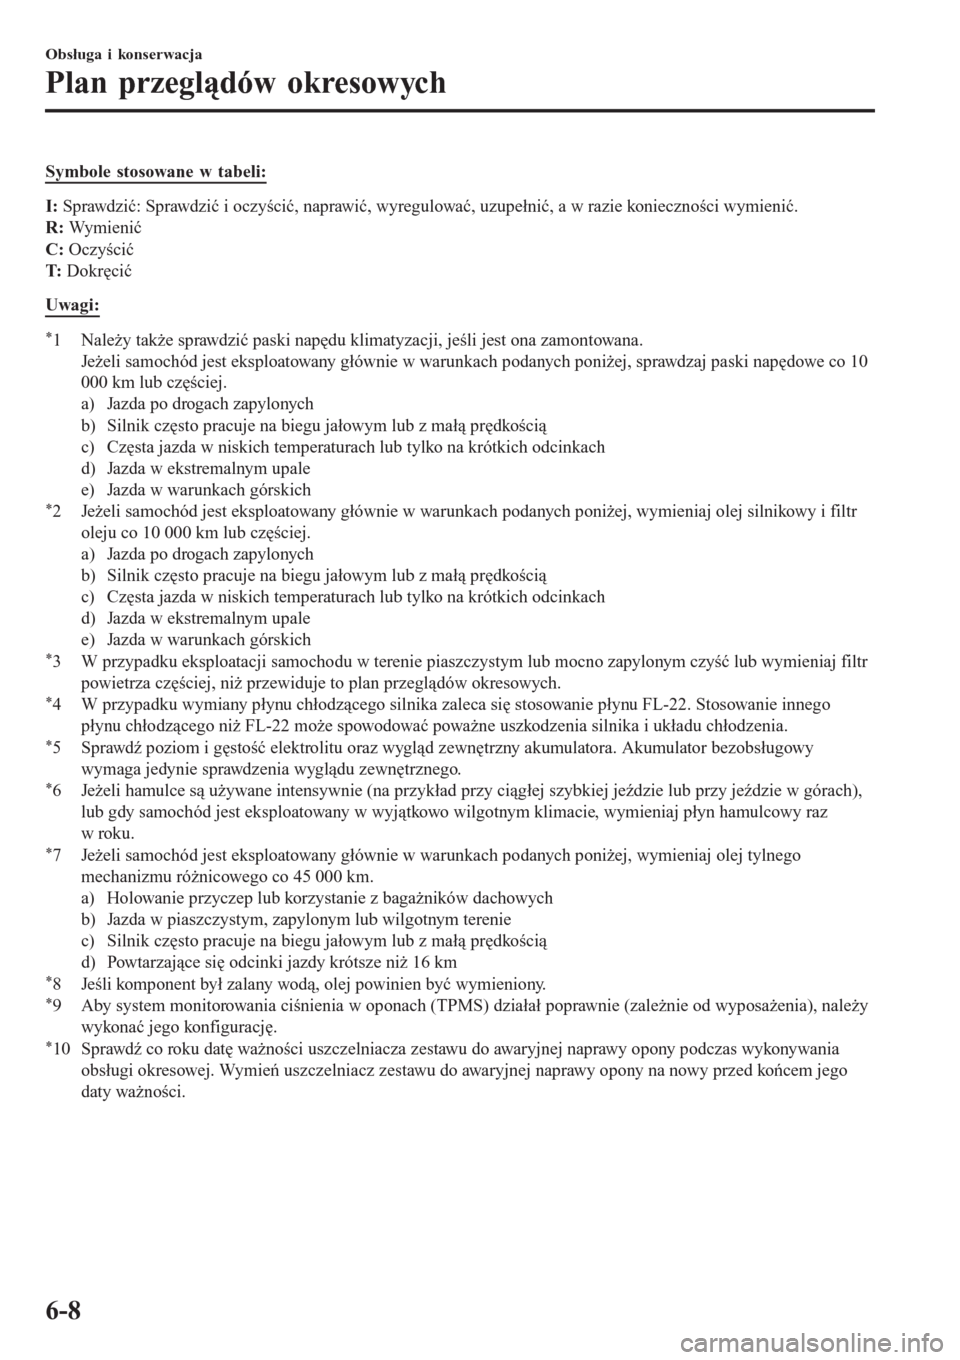 MAZDA MODEL CX-3 2015  Instrukcja Obsługi (in Polish) Symbole stosowane w tabeli:
I: Sprawdzić: Sprawdzić i oczyścić, naprawić, wyregulować, uzupełnić, a w razie konieczności wymienić.
R: Wymienić
C: Oczyścić
T: Dokręcić
Uwagi:
*1 Należy 